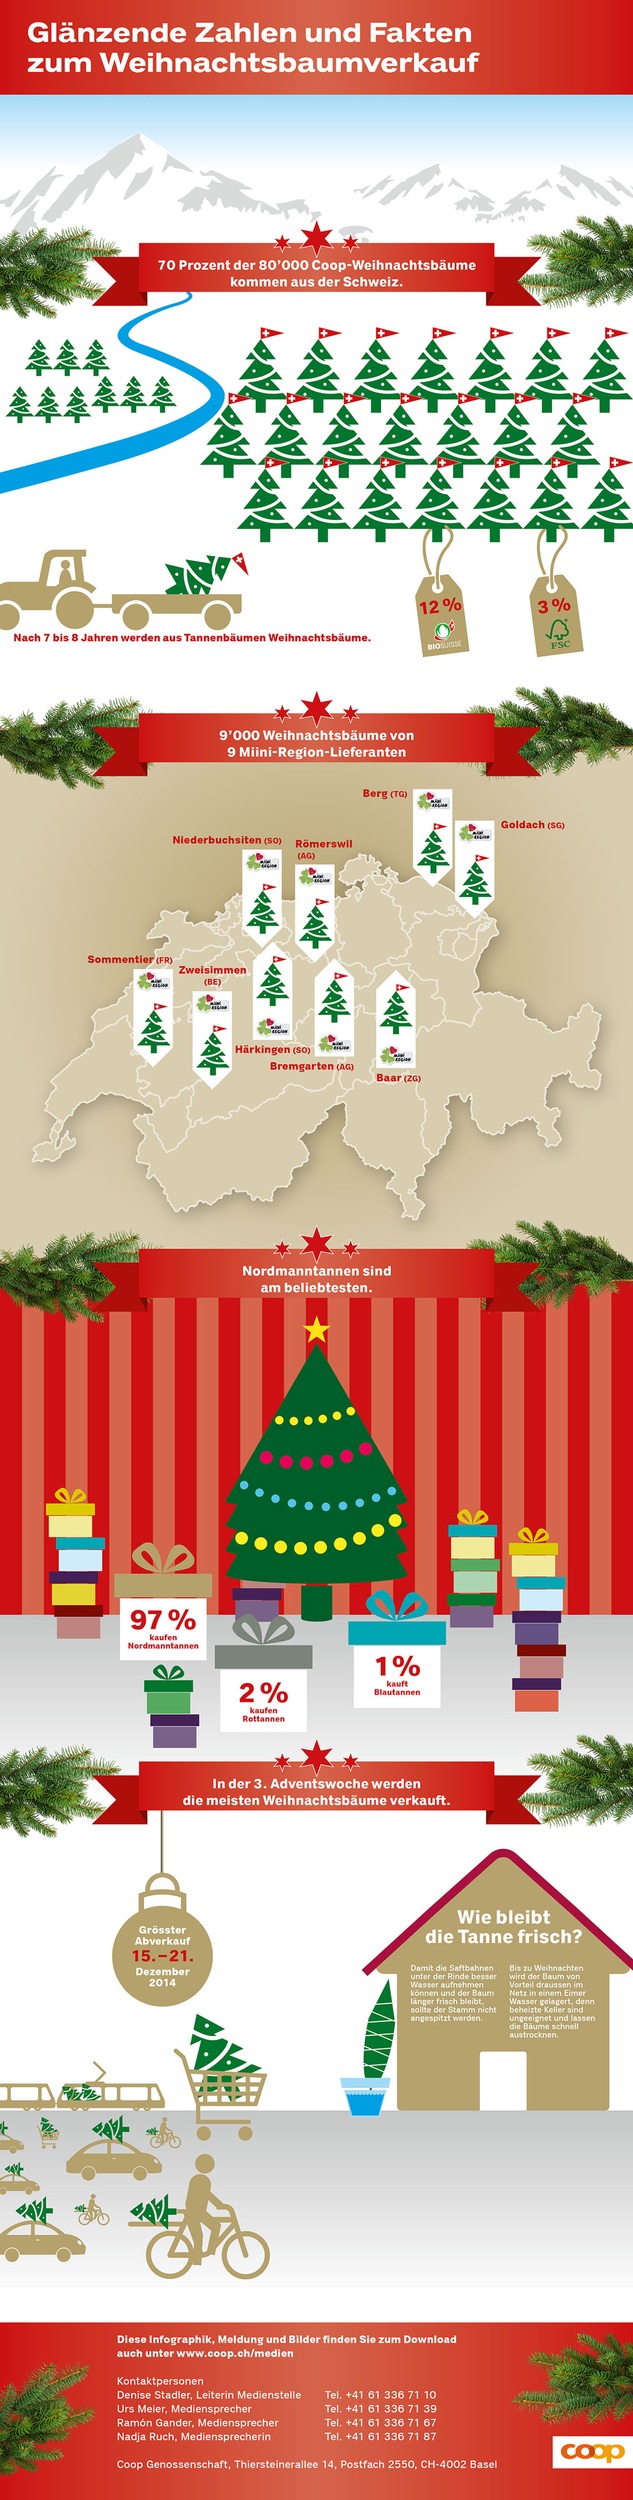 7 von 10 Weihnachtsbäumen stammen aus der Schweiz / Taten statt Worte Nr. 300: Coop setzt auf einheimische Weihnachtsbäume